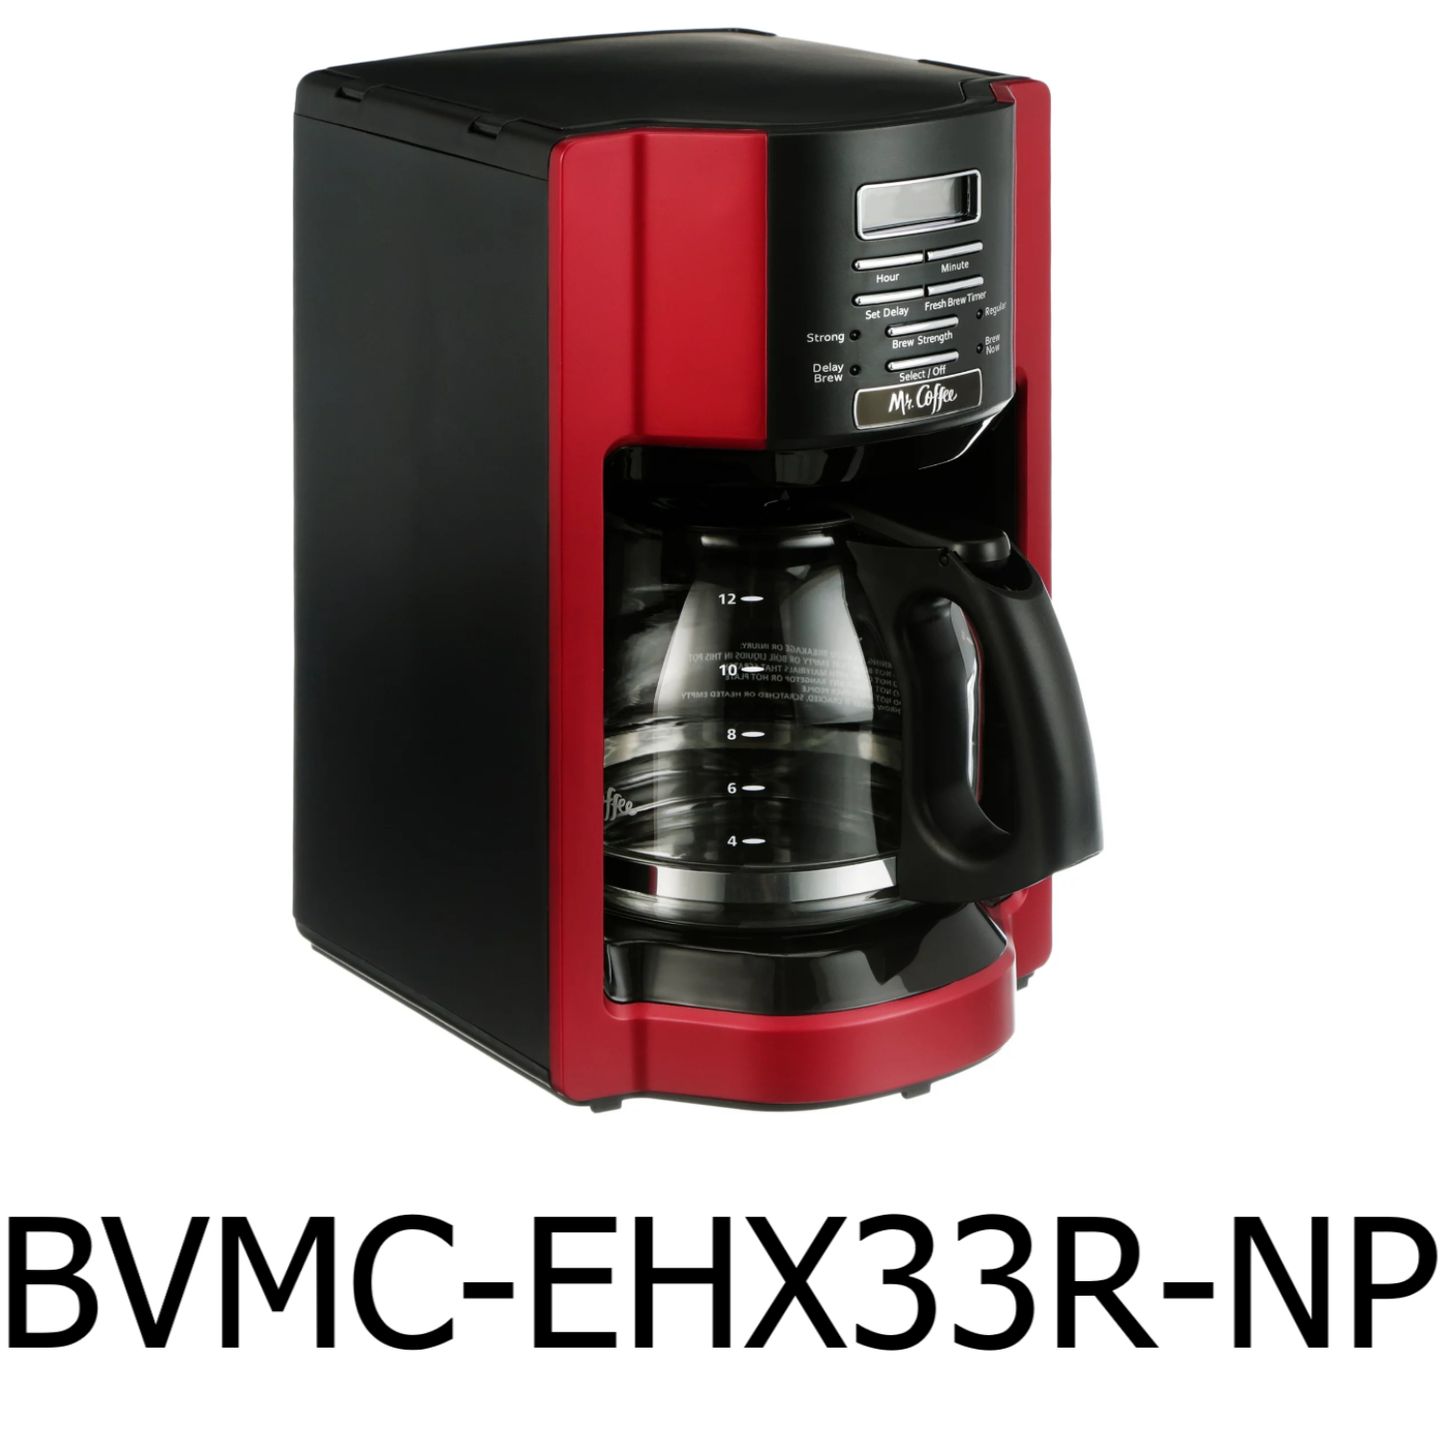 Mr. Coffee Red Kitchen Appliances